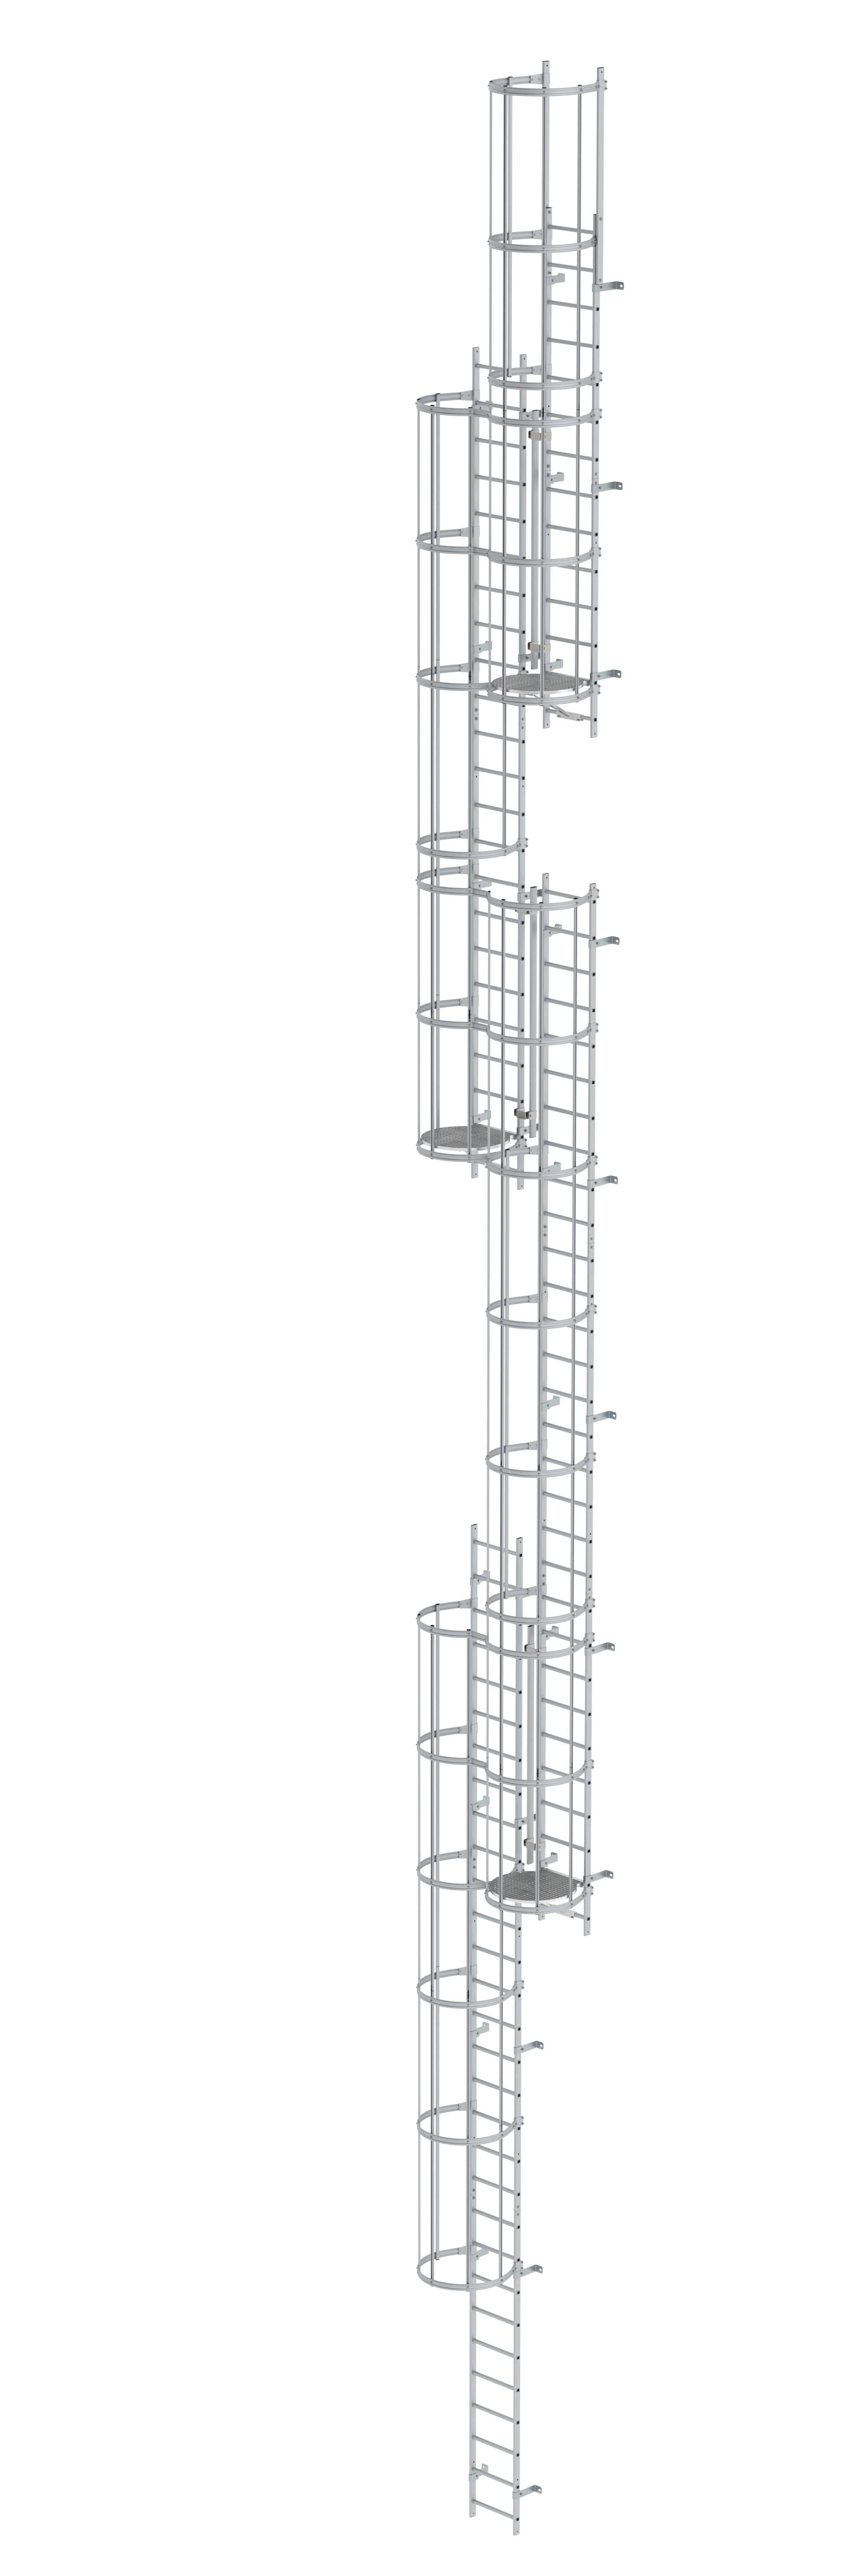 MUNK Mehrzügige Steigleiter mit Rückenschutz (Maschinen) Aluminium blank  